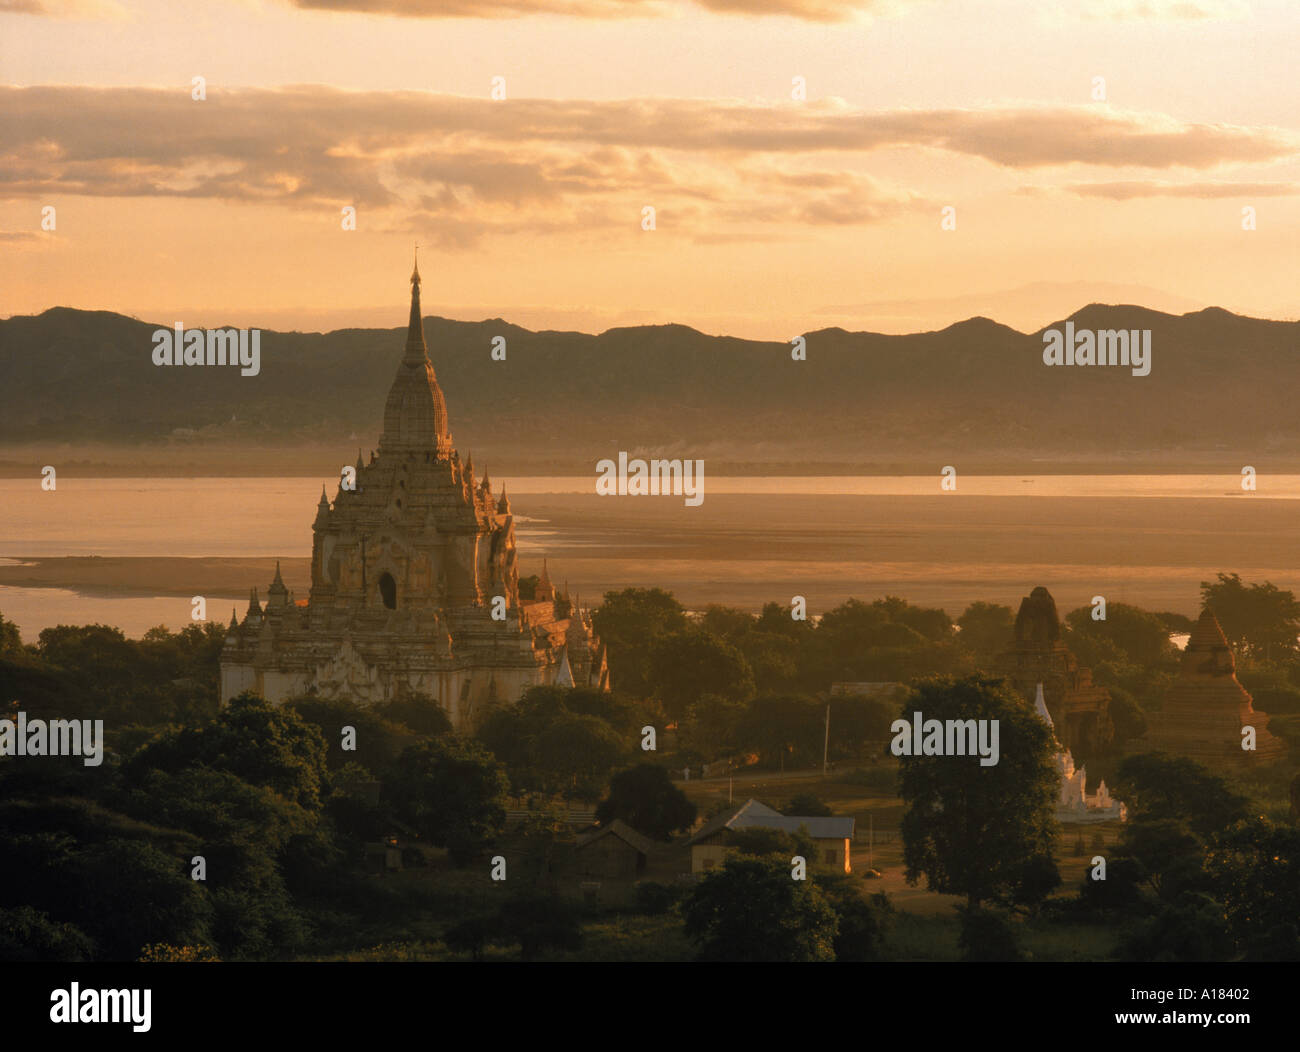 Luftaufnahme über die Gawdawpalin Pagode in der Dämmerung Abenddämmerung Bagan heidnischen Gebiet Myanmar Burma Asien N Blythe Stockfoto